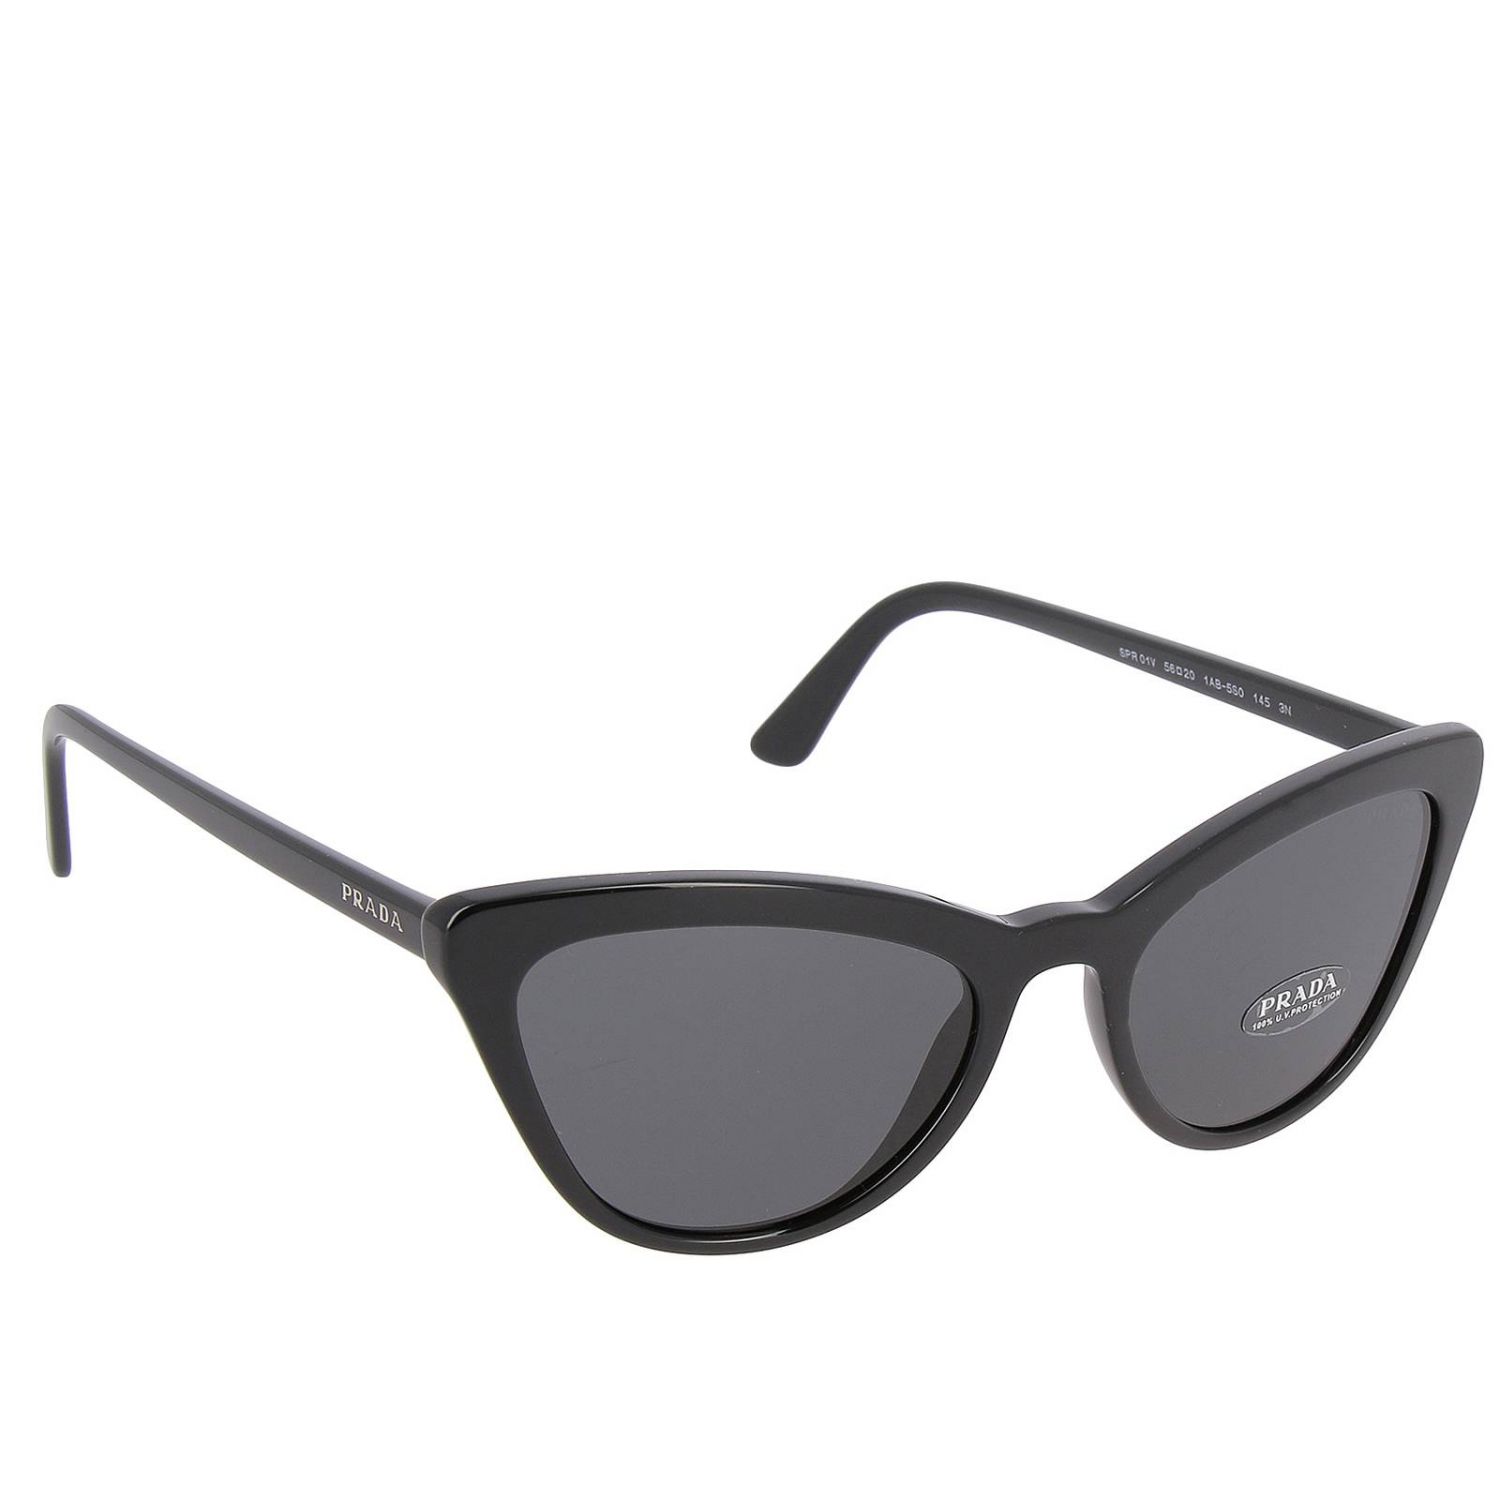 Prada Outlet Sunglasses women Black Glasses Prada SPR 01V